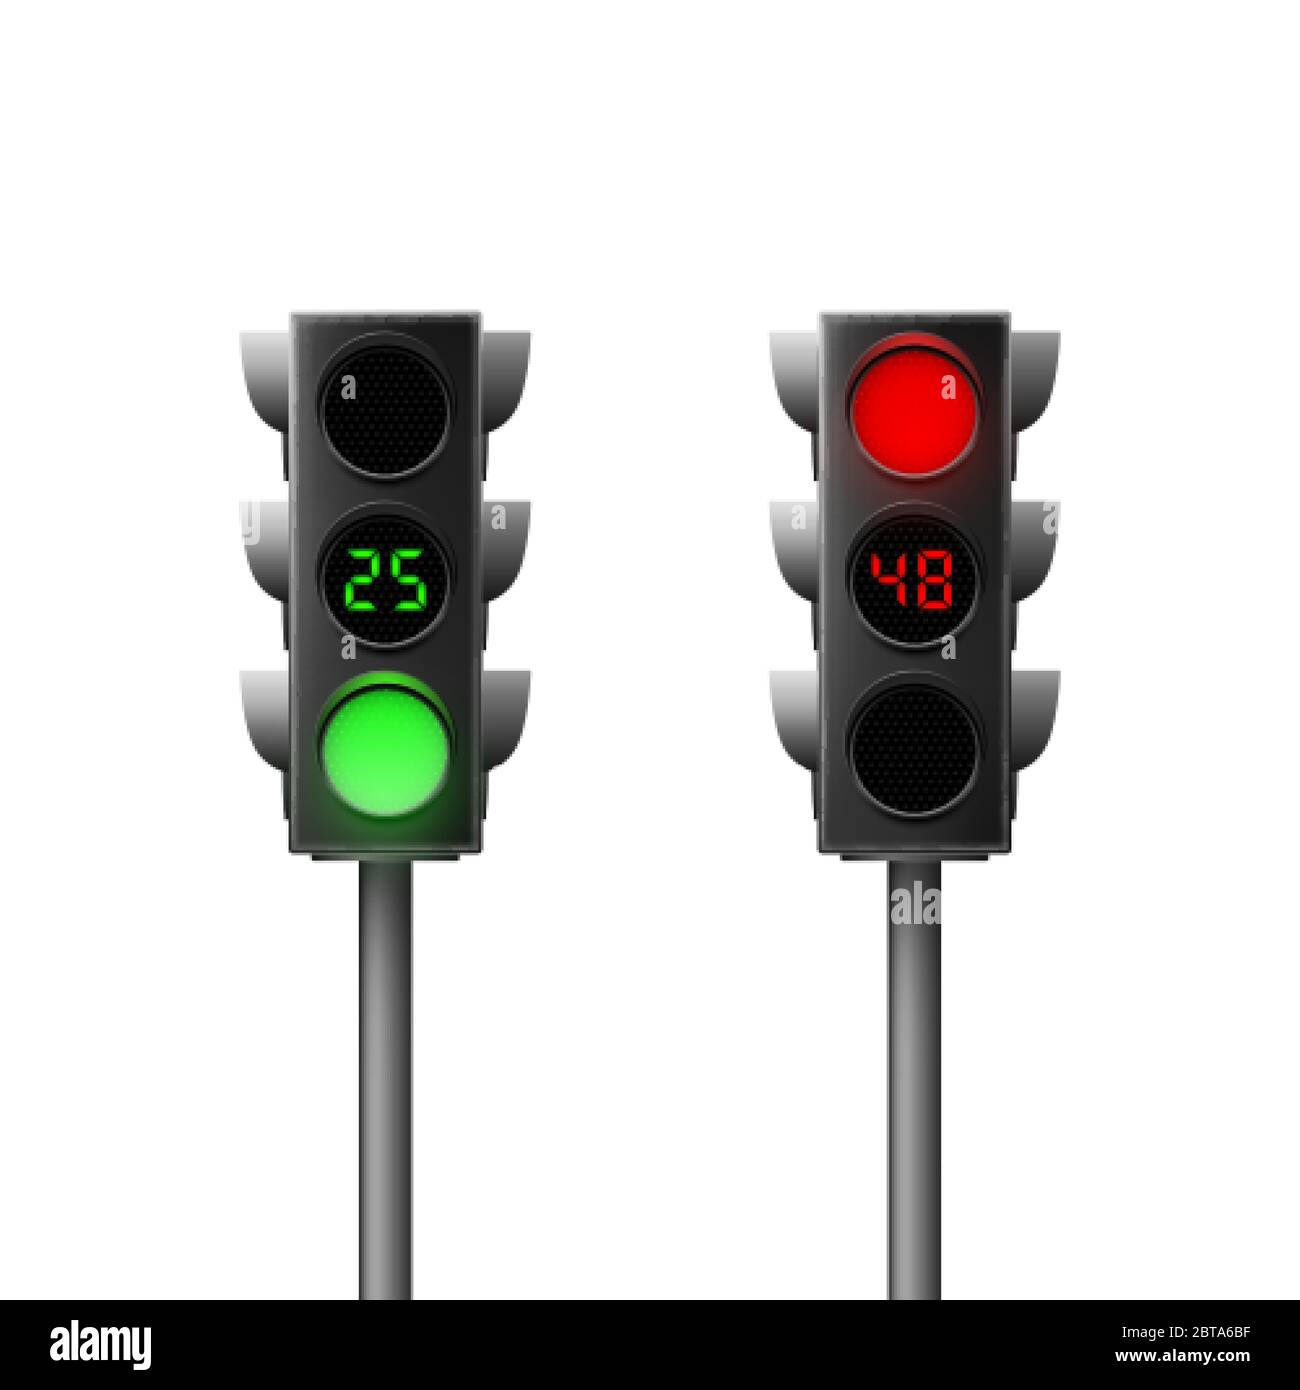 Semáforos realistas en verde y rojo con cuenta atrás. Leyes de tráfico. Ilustración vectorial aislada Ilustración del Vector